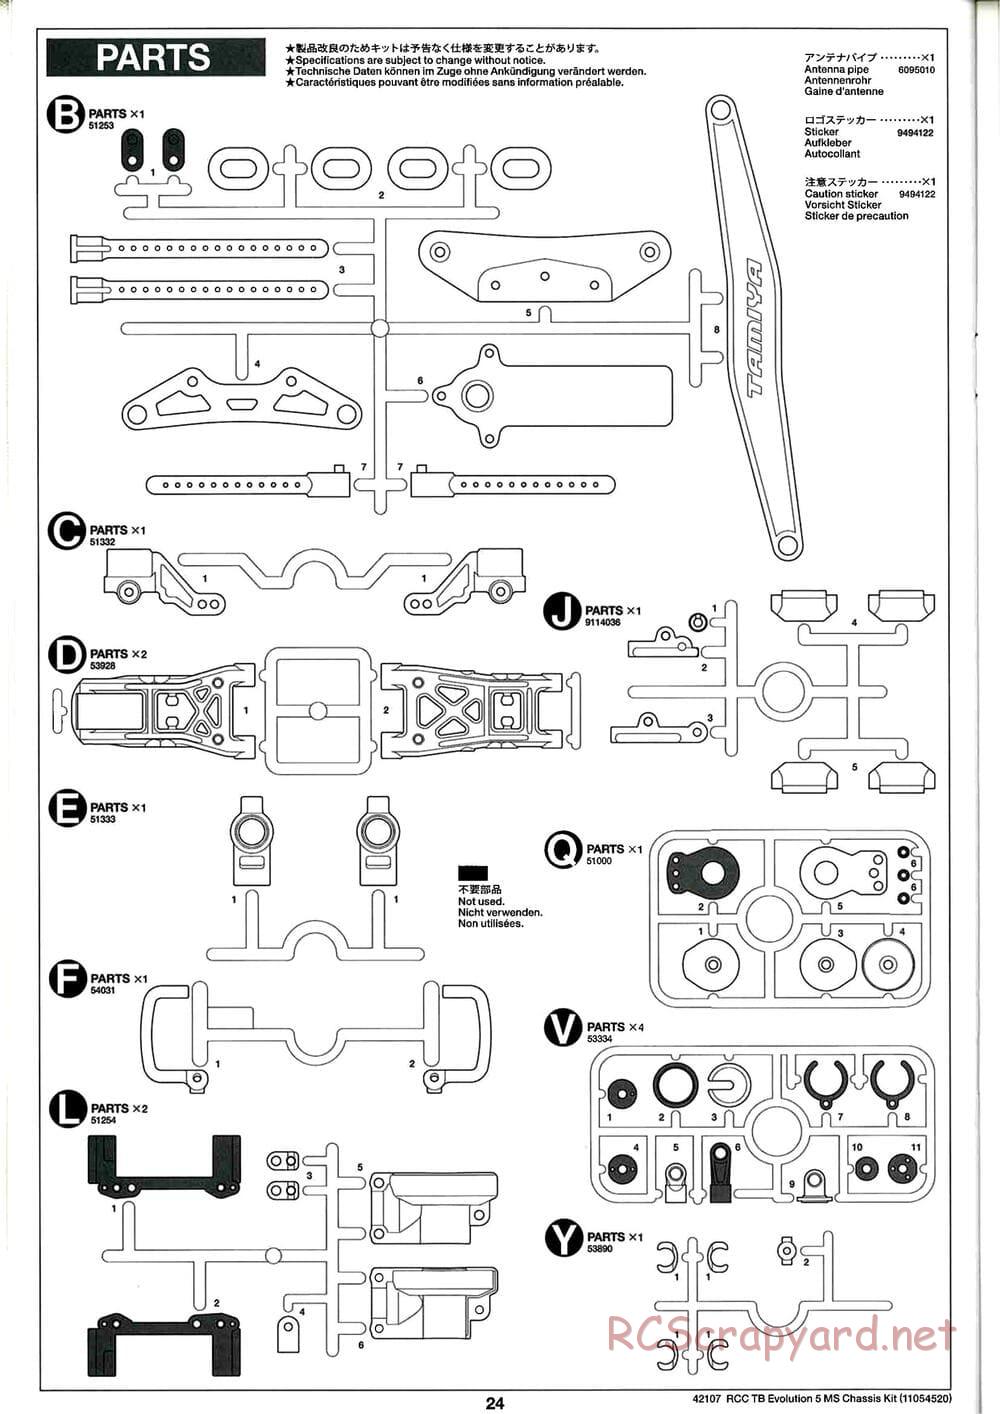 Tamiya - TB Evolution 5 MS Chassis - Manual - Page 24